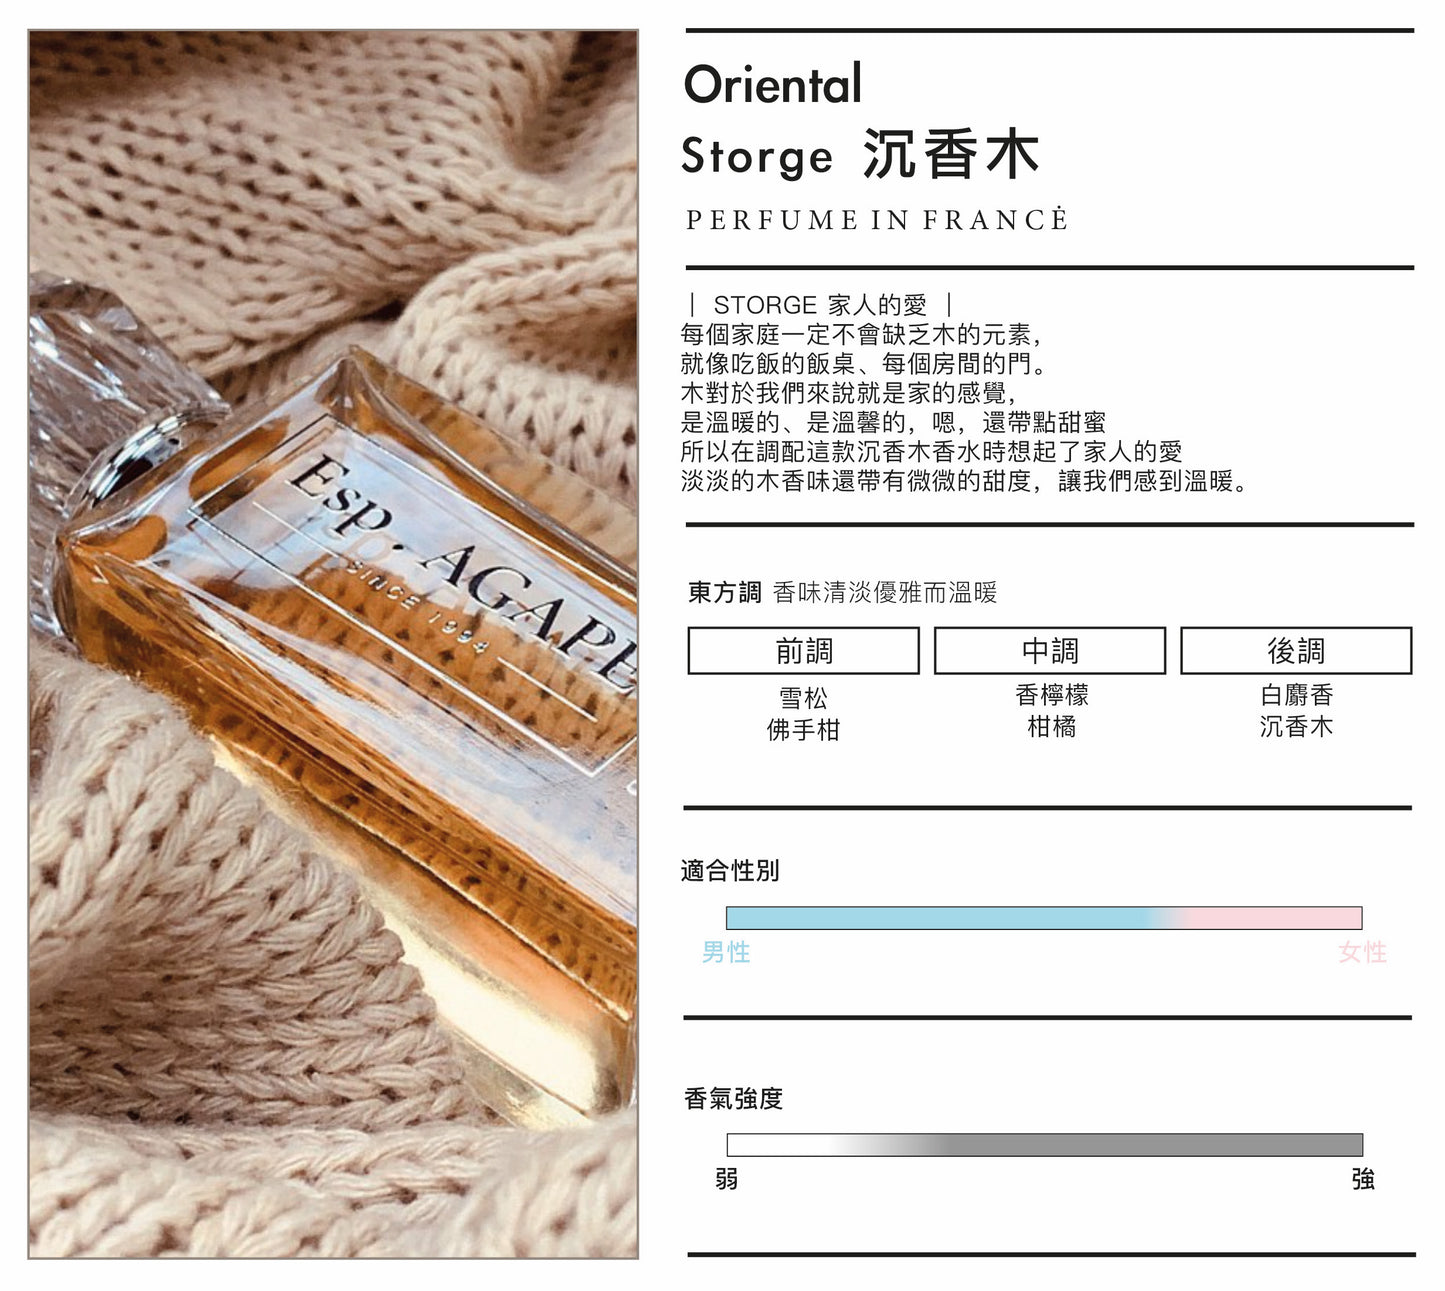 STORGE Oriental 沉香木法國香水